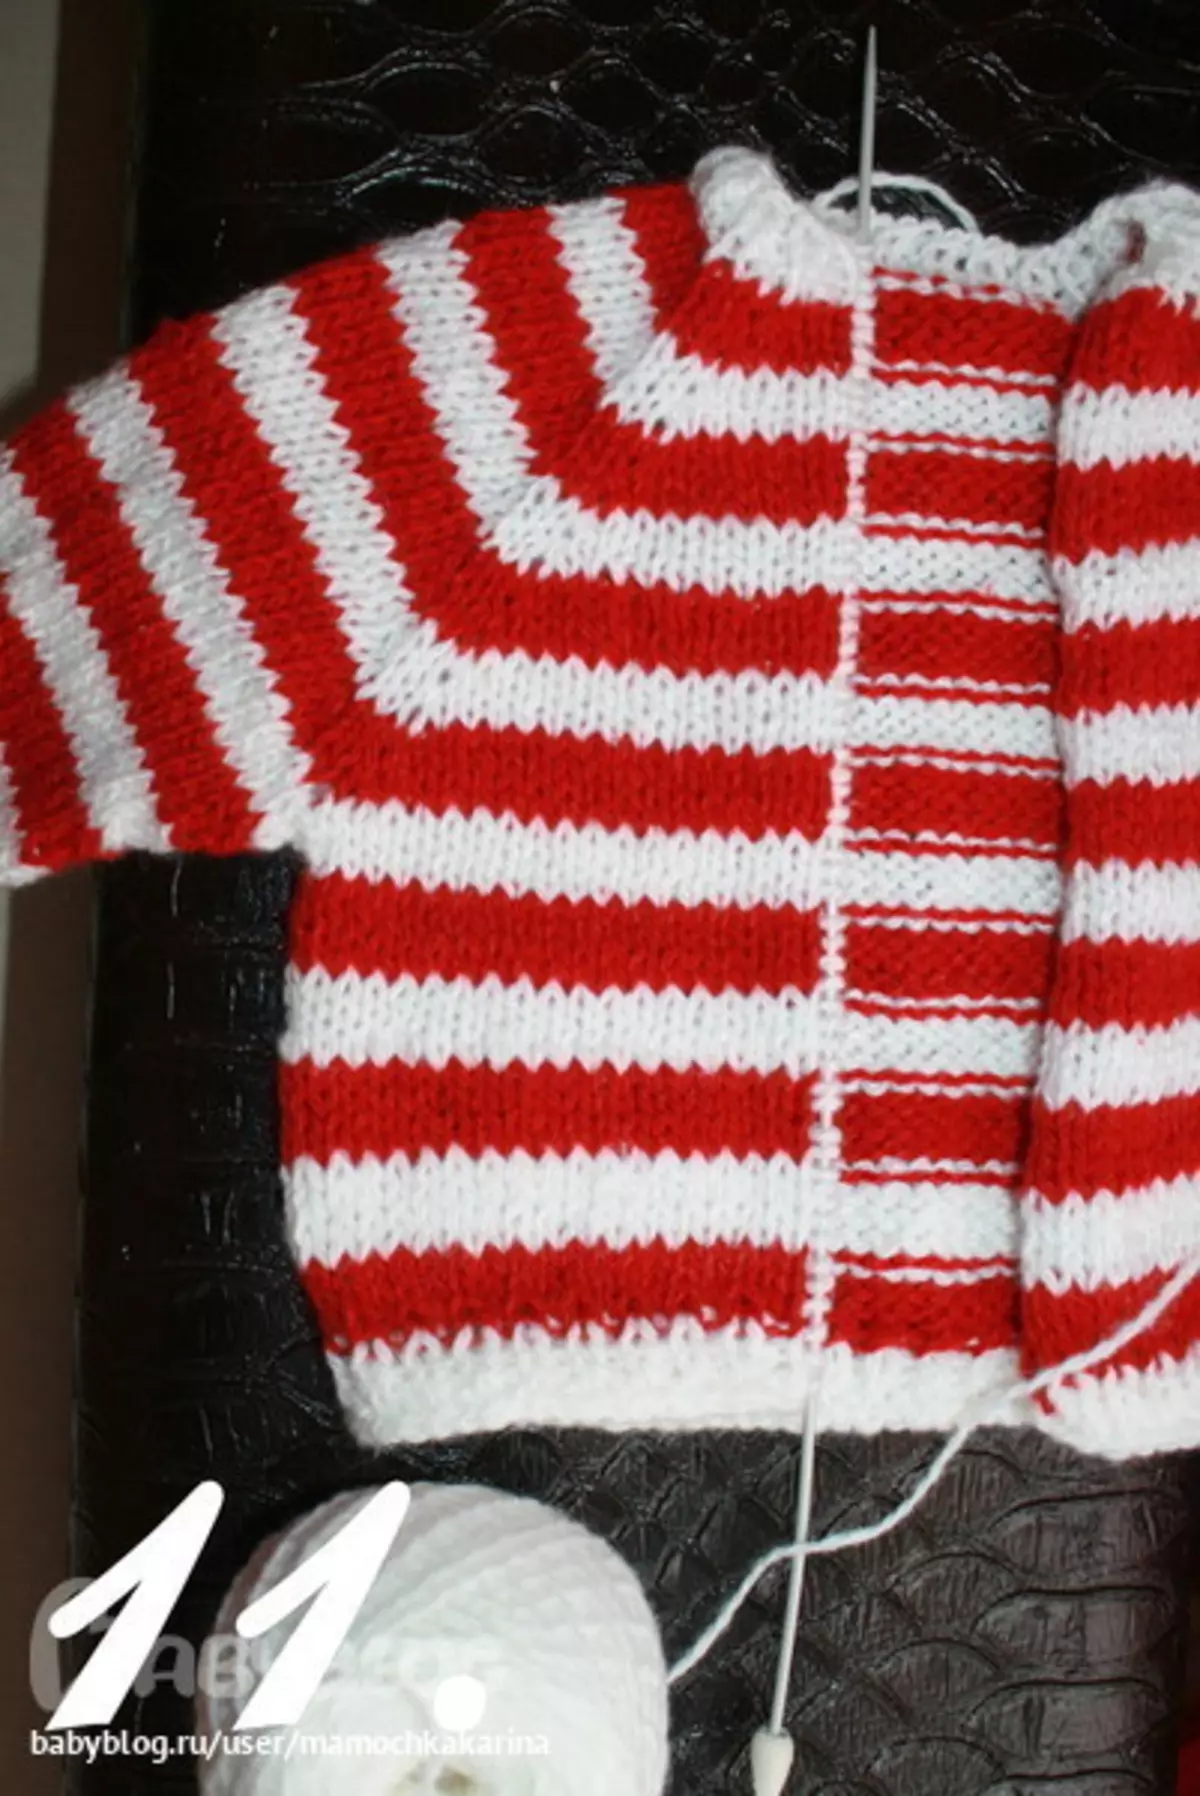 Sweater rajutan untuk gadis dengan jarum rajut: Pilihan untuk gadis 2 tahun, blus pekerjaan dilakukan sendiri